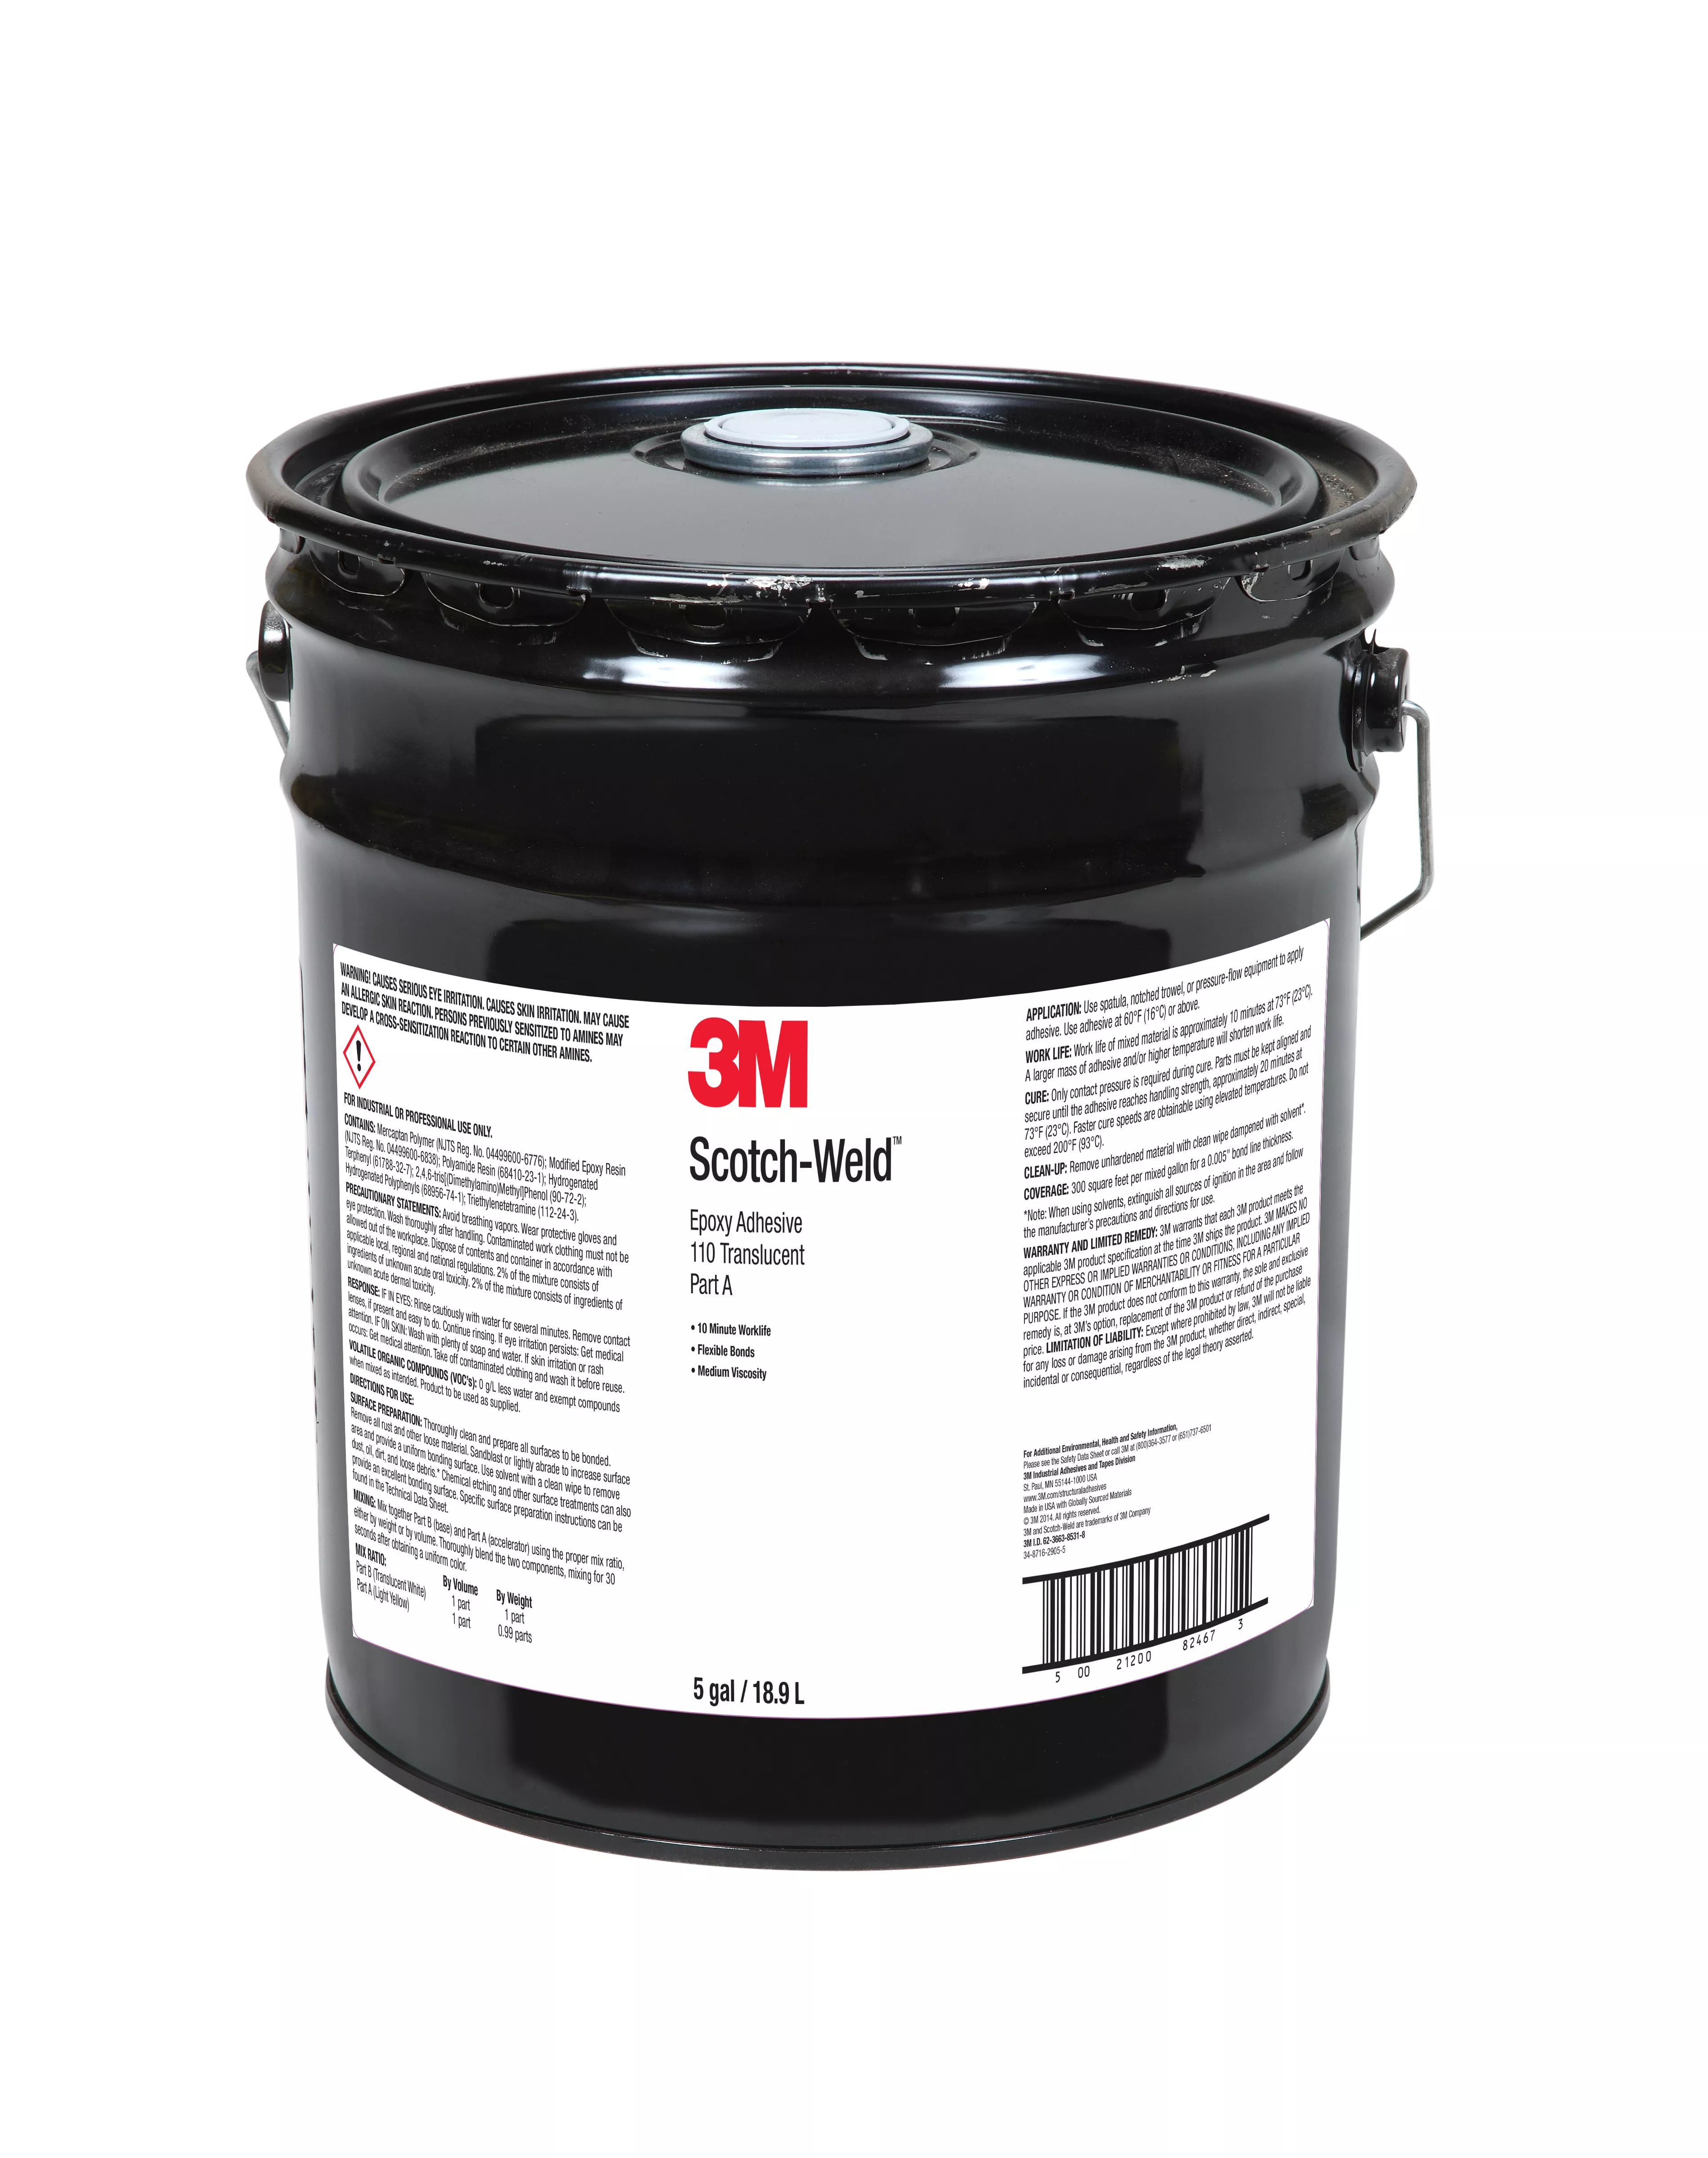 3M™ Scotch-Weld™ Epoxy Adhesive 110, Translucent, Part A, 5 Gallon
(Pail), Drum